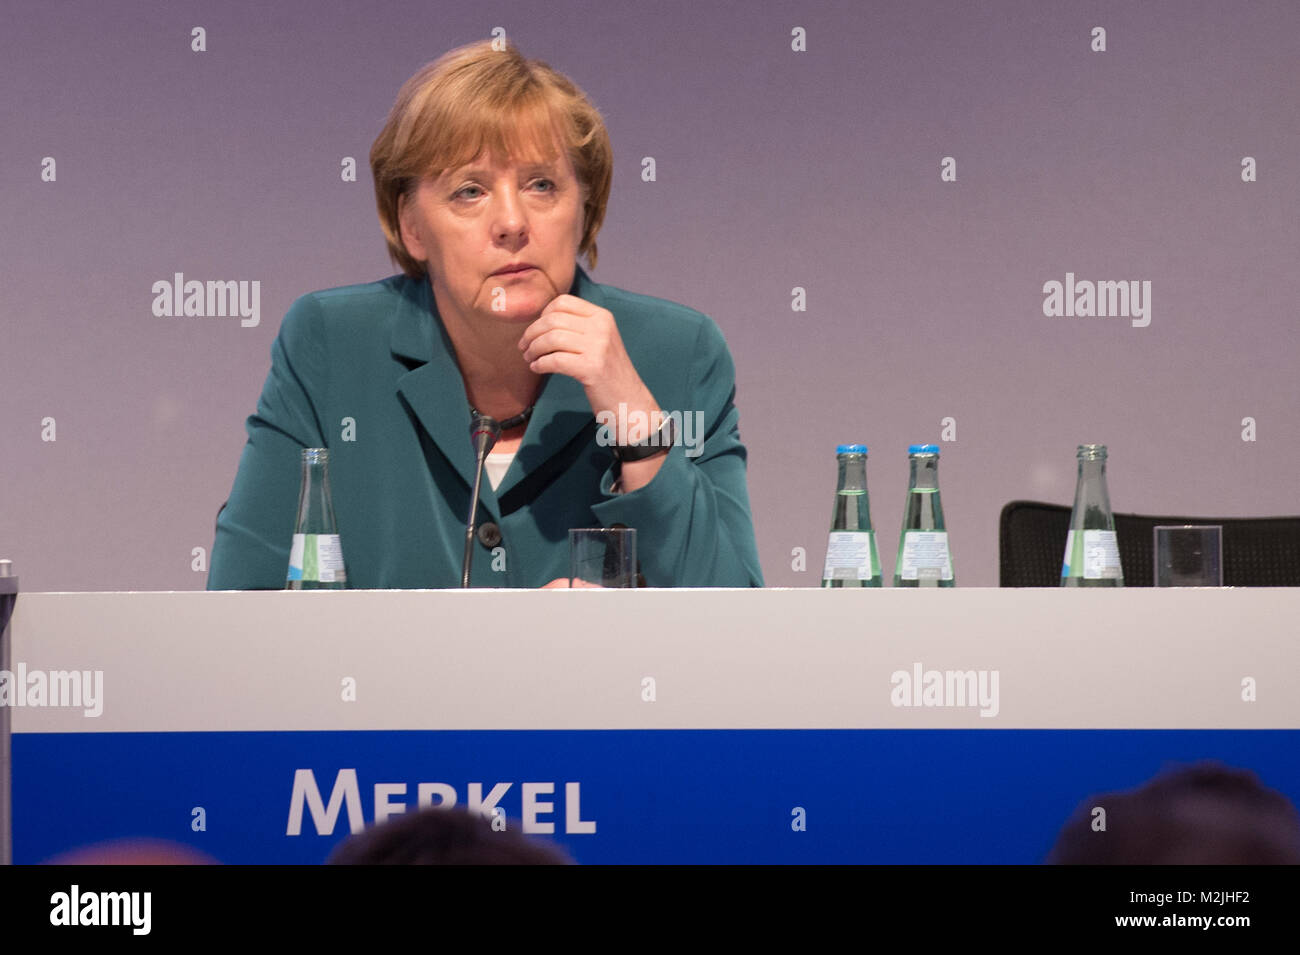 Die Vorsitzende der CDU Deutschlands, Bundeskanzlerin Dr. Angela Merkel, wird mit dem "Wirtschaftstag 2013" des Wirtschaftsrates der CDU reden und María Soraya Sáenz de Santamaría Antón und Mark Rutte. Stockfoto